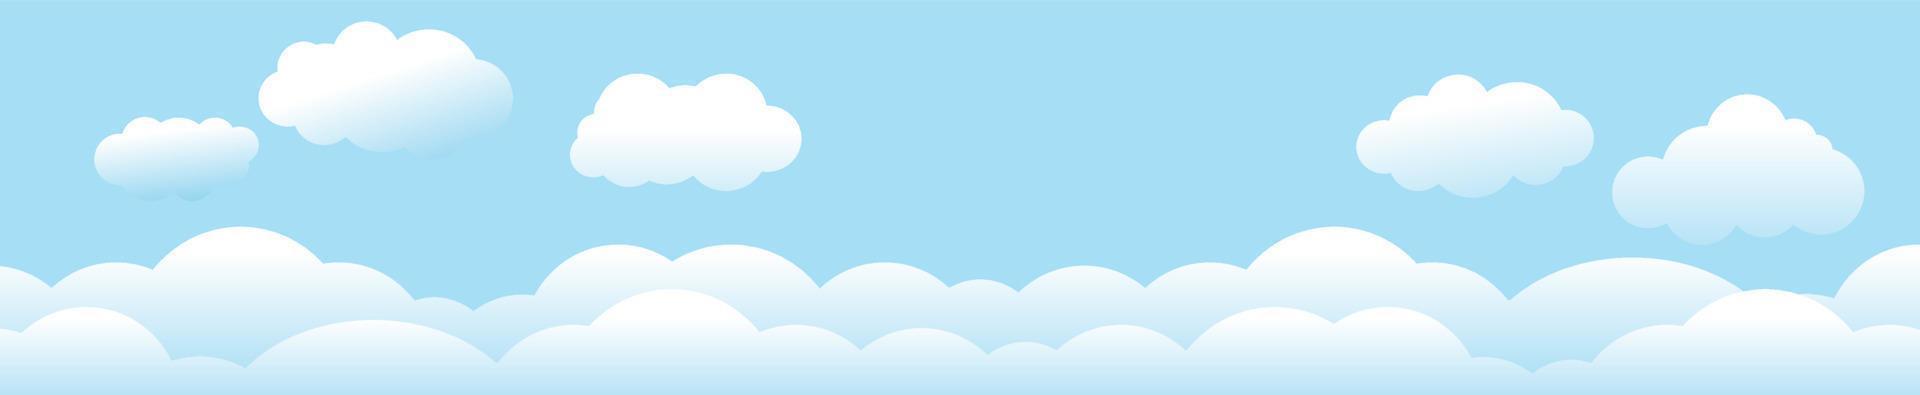 nubes y cielo, fondo de naturaleza meteorológica, banner horizontal, ilustración vectorial. vector